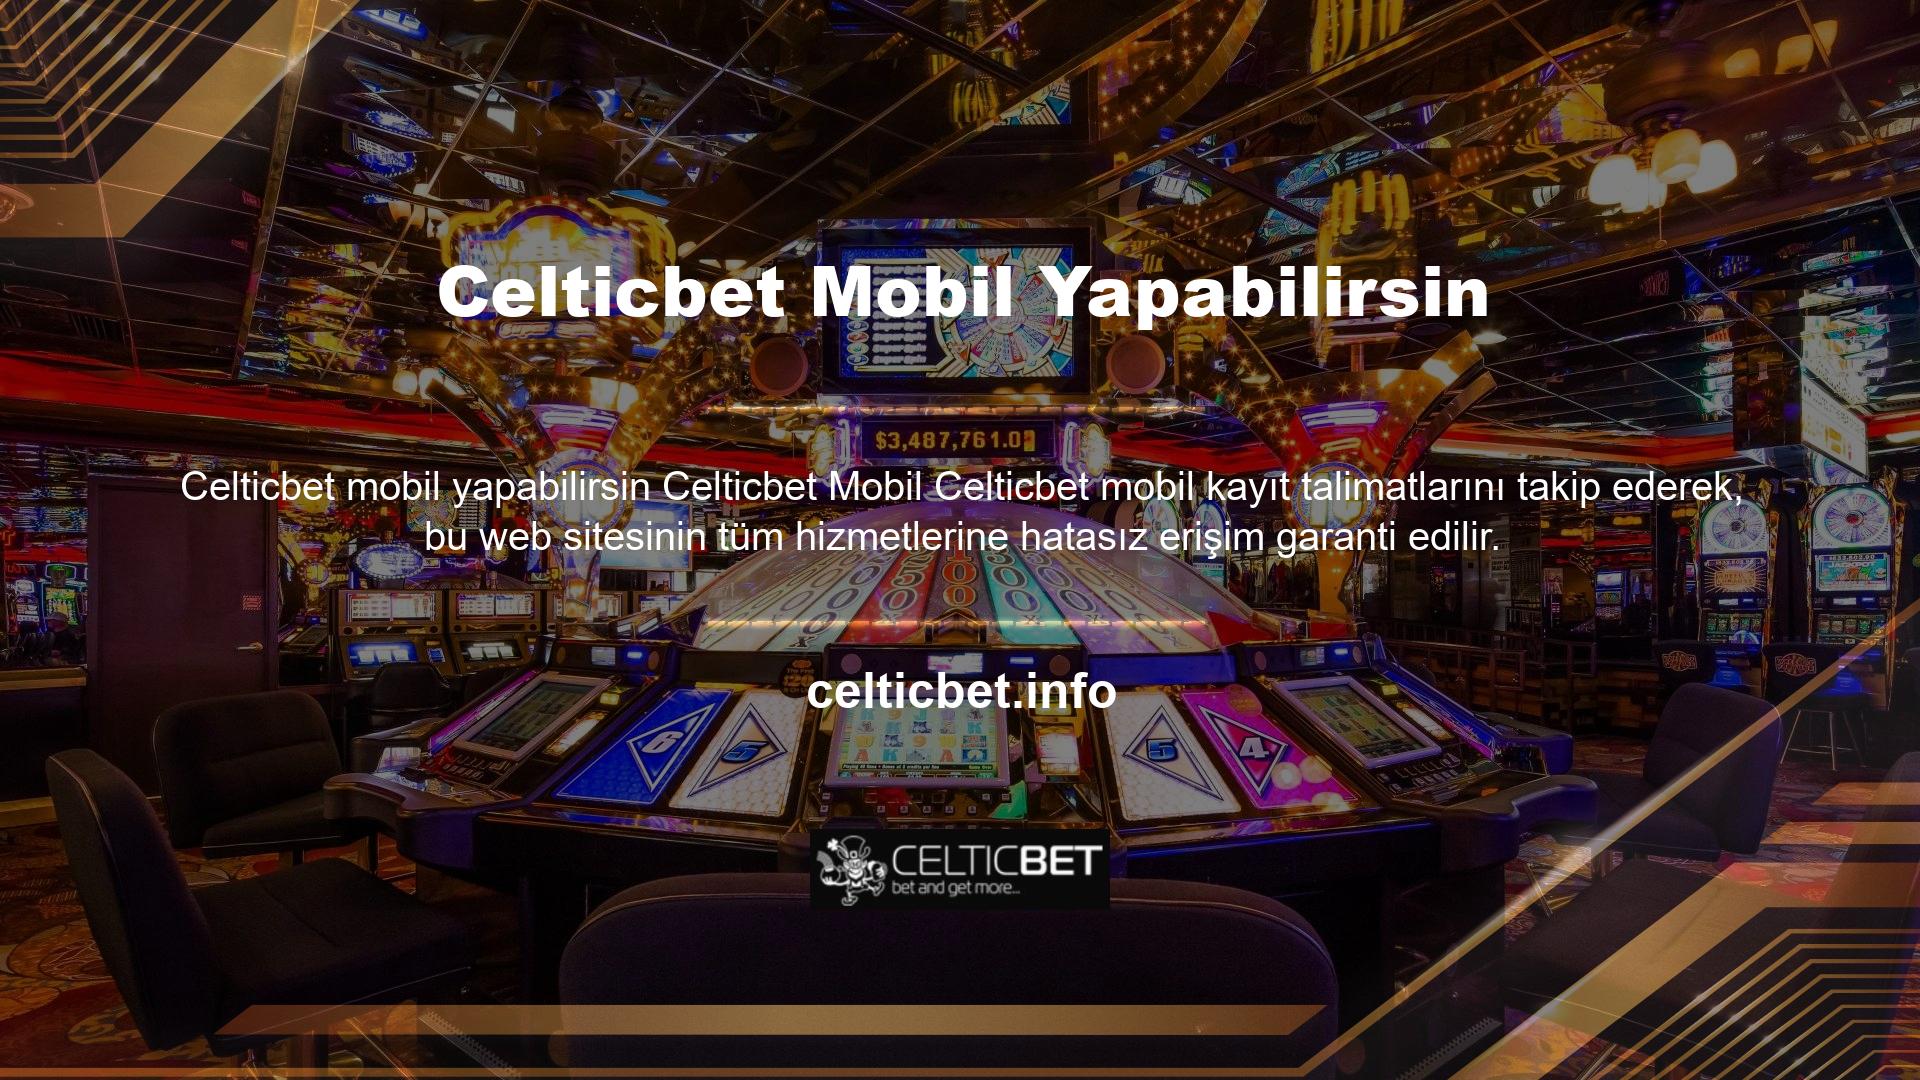 Celticbet web sitesinin spor bahisleri bölümünü cep telefonunuzdan kullanabilirsiniz